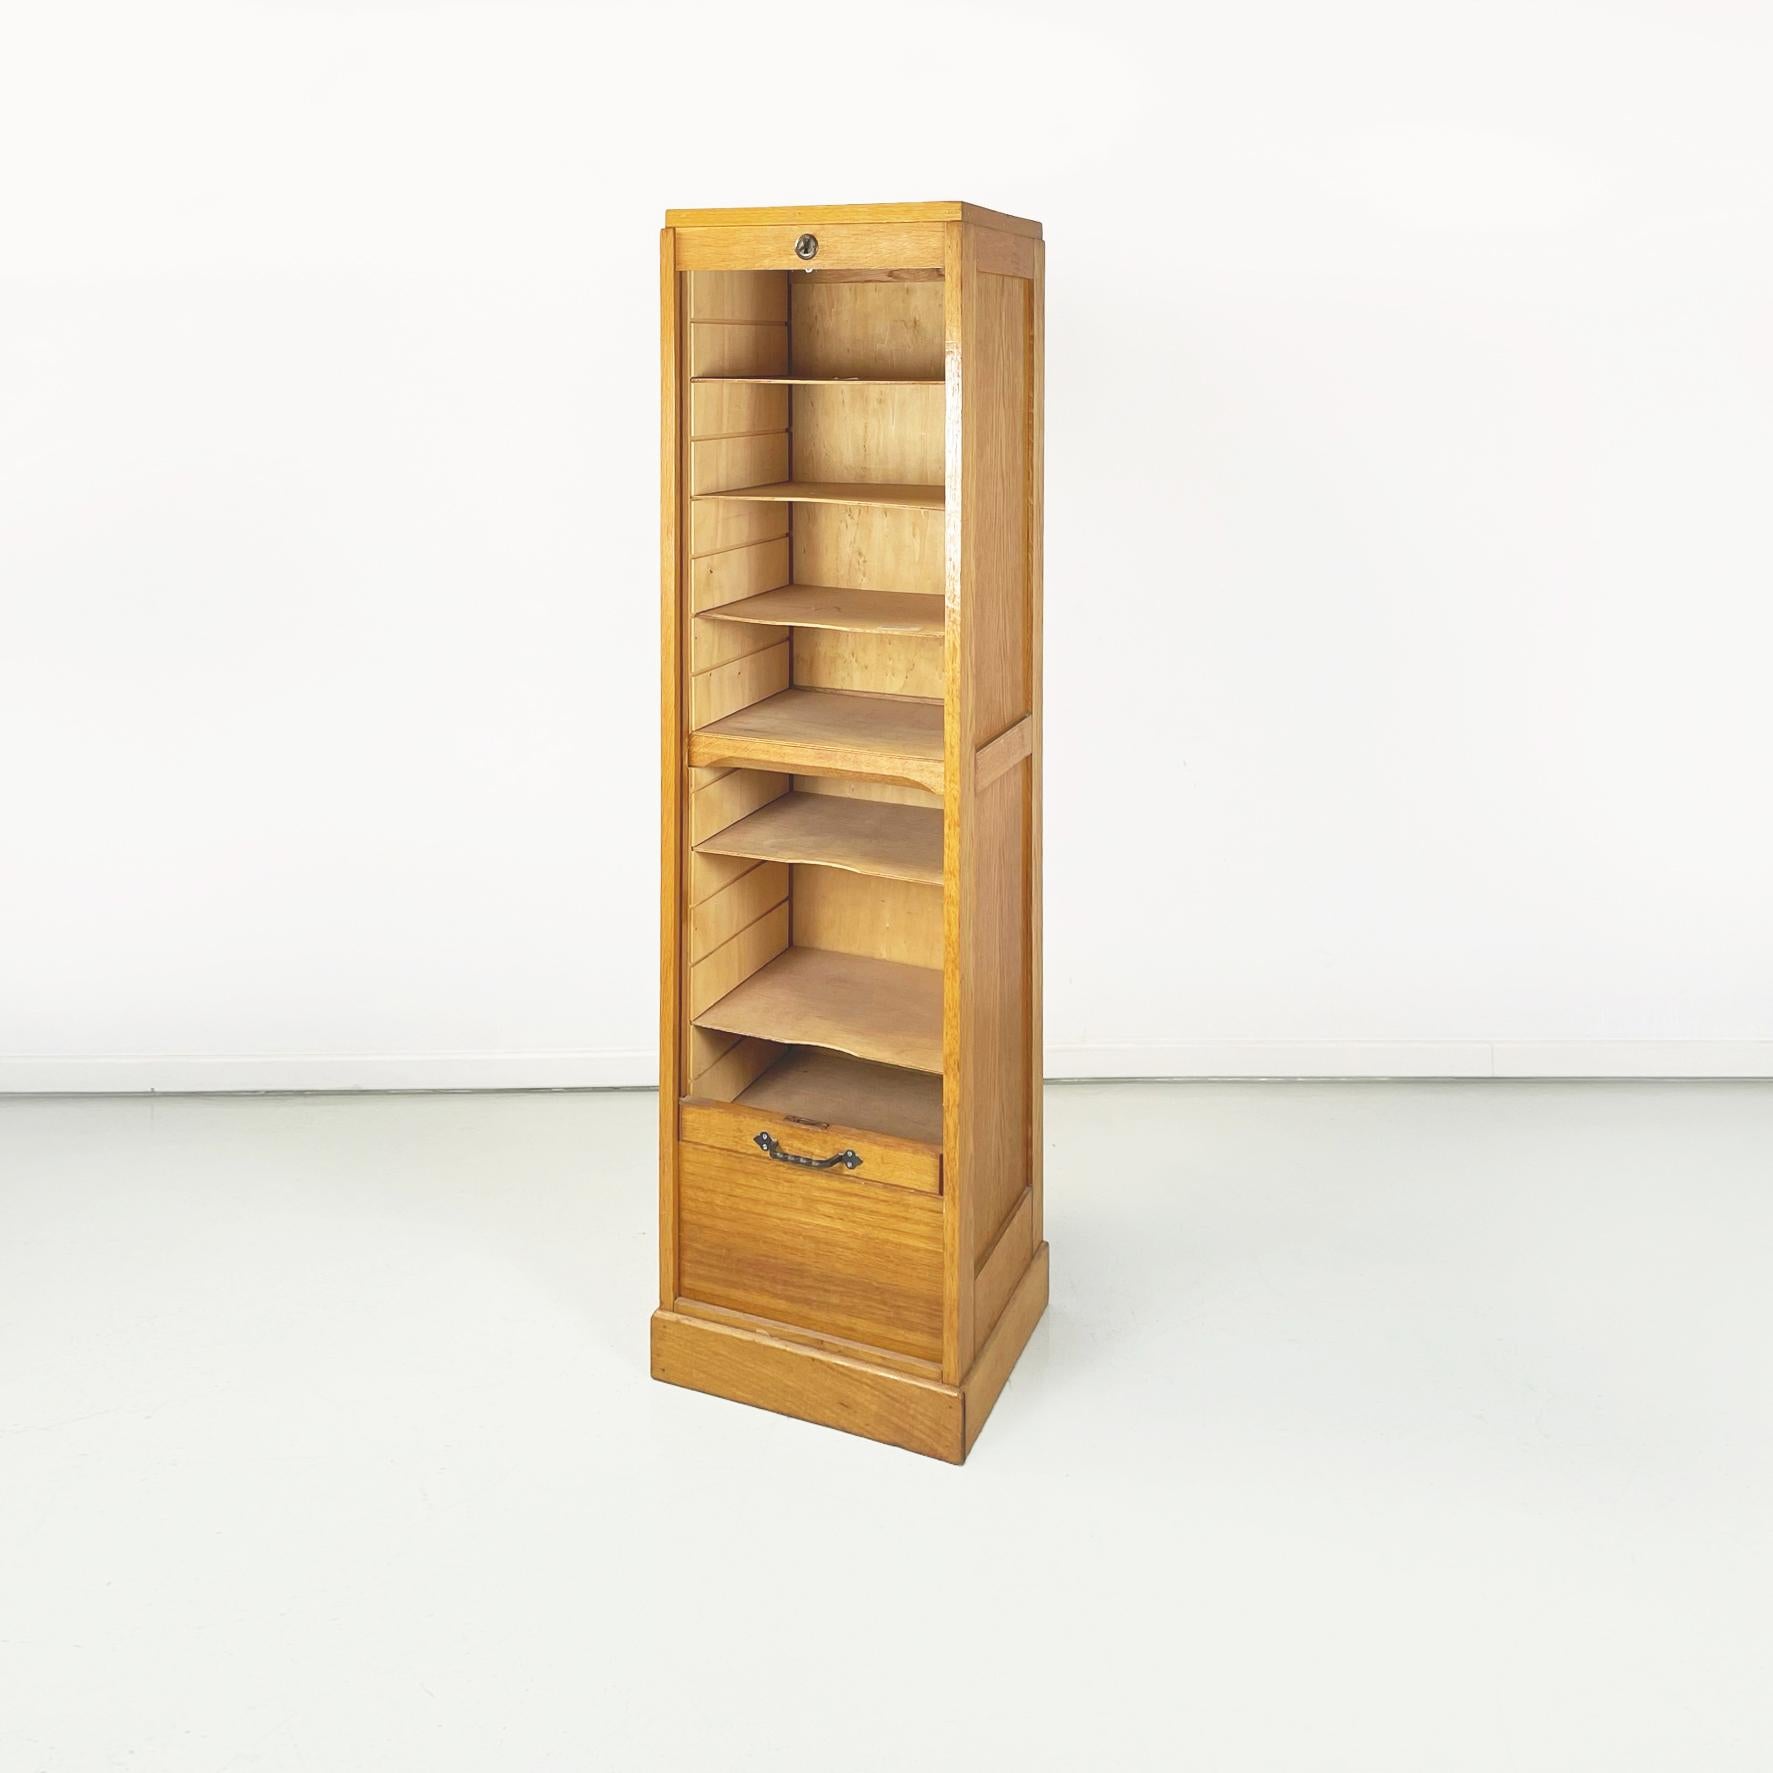 Italienische Mid-Century Modern Holz Büro Ablage Kabine Archiv Kommode, 1940er Jahre
Büro-Aktenschrank mit rechteckigem Sockel aus hellem Holz. Auf der Vorderseite befinden sich mehrere Regale mit Klappenöffnung. Der Öffnungsgriff ist aus